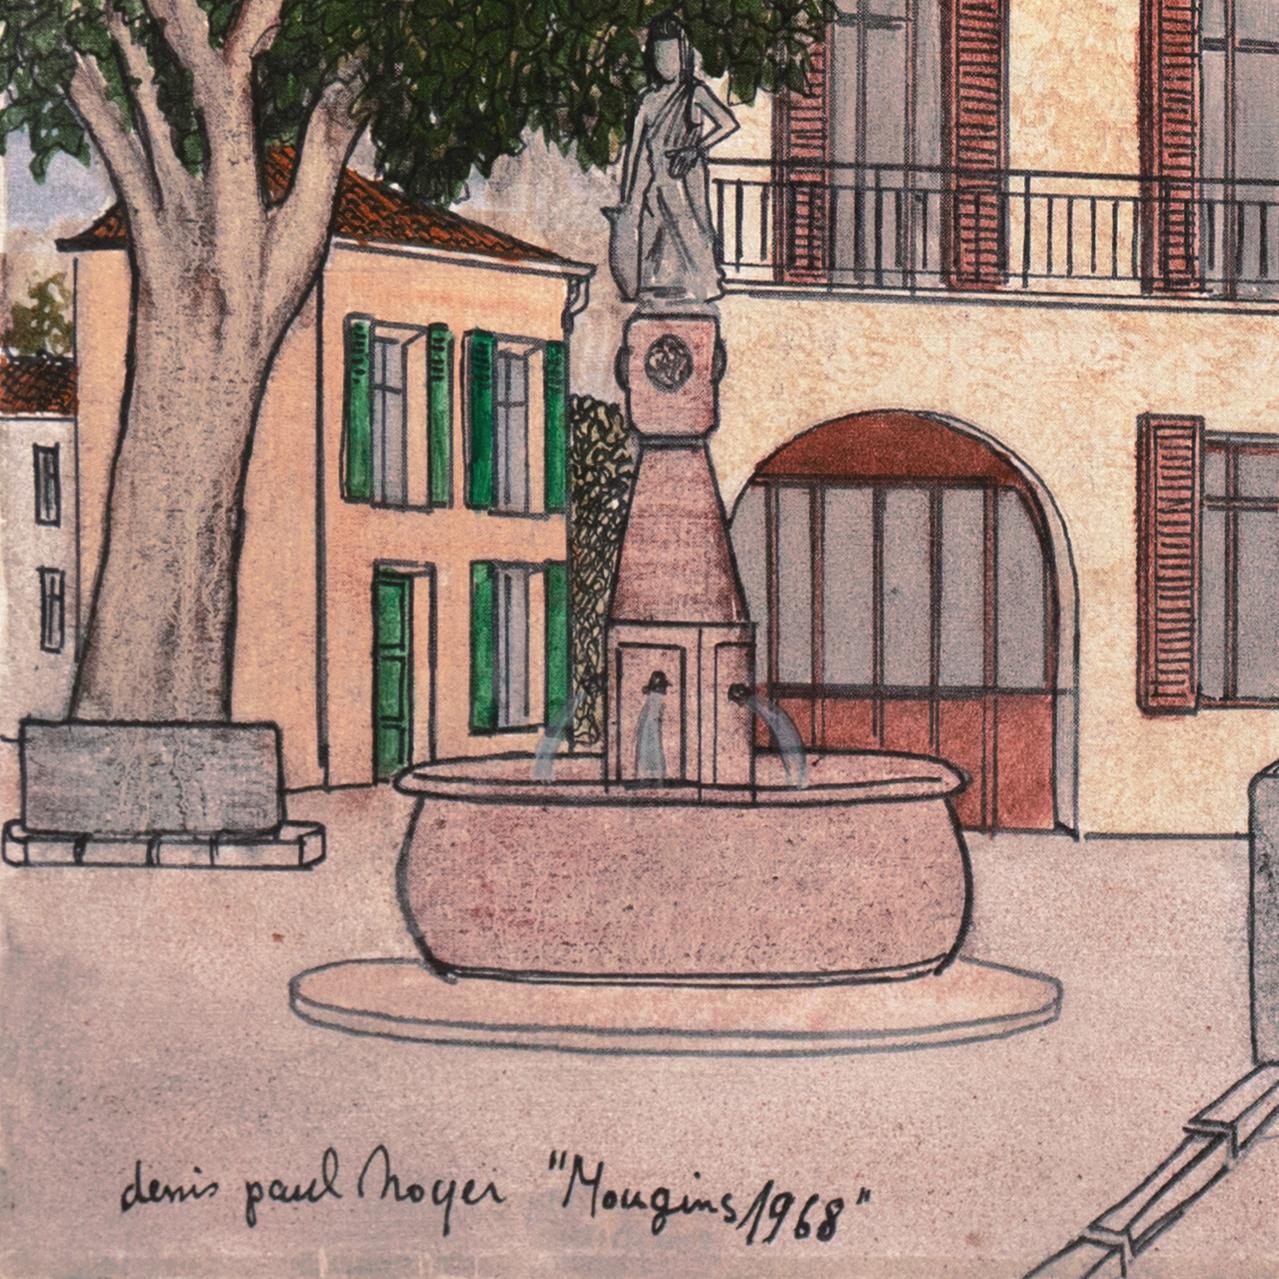  'Mougins', Côte d'Azur, School of Paris, France, Ecole des Beaux Arts, Lyon - Painting by Denis Paul Noyer